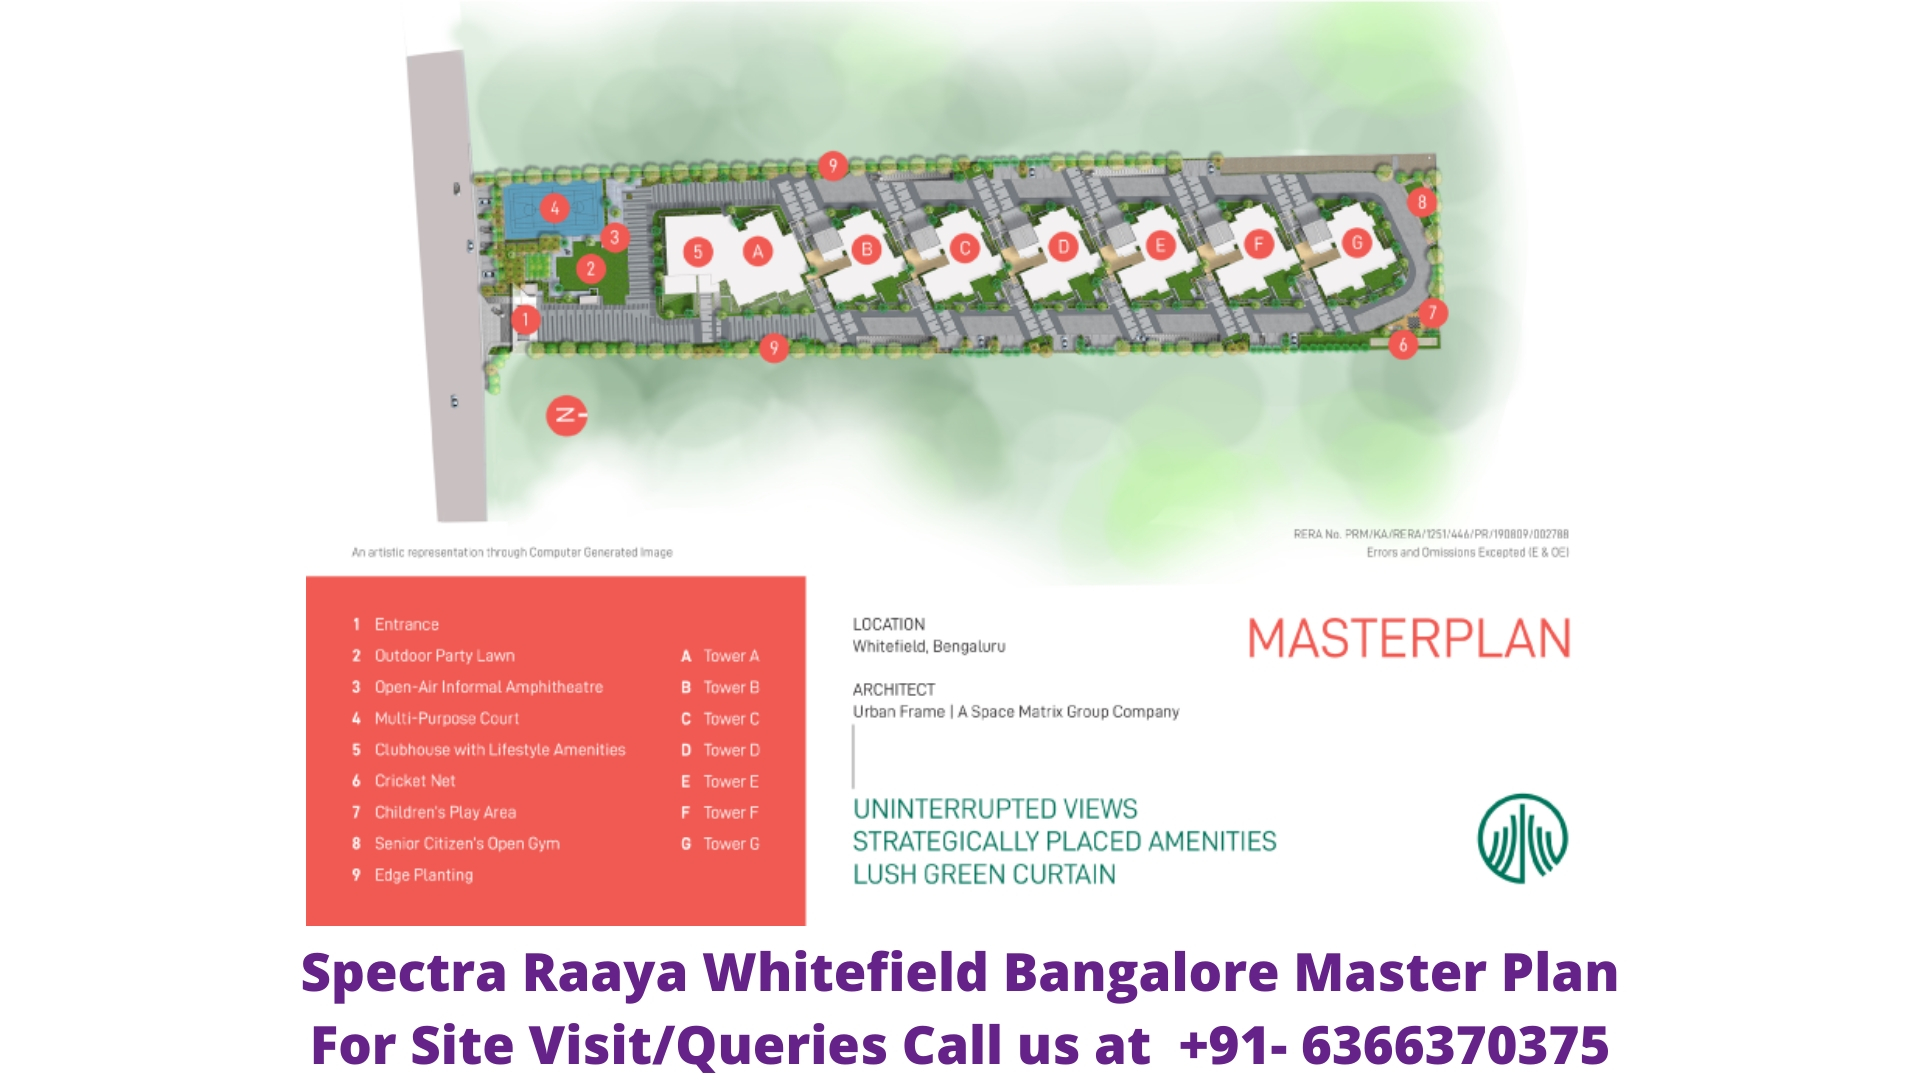 Spectra Raaya Whitefield Bangalore Master Plan